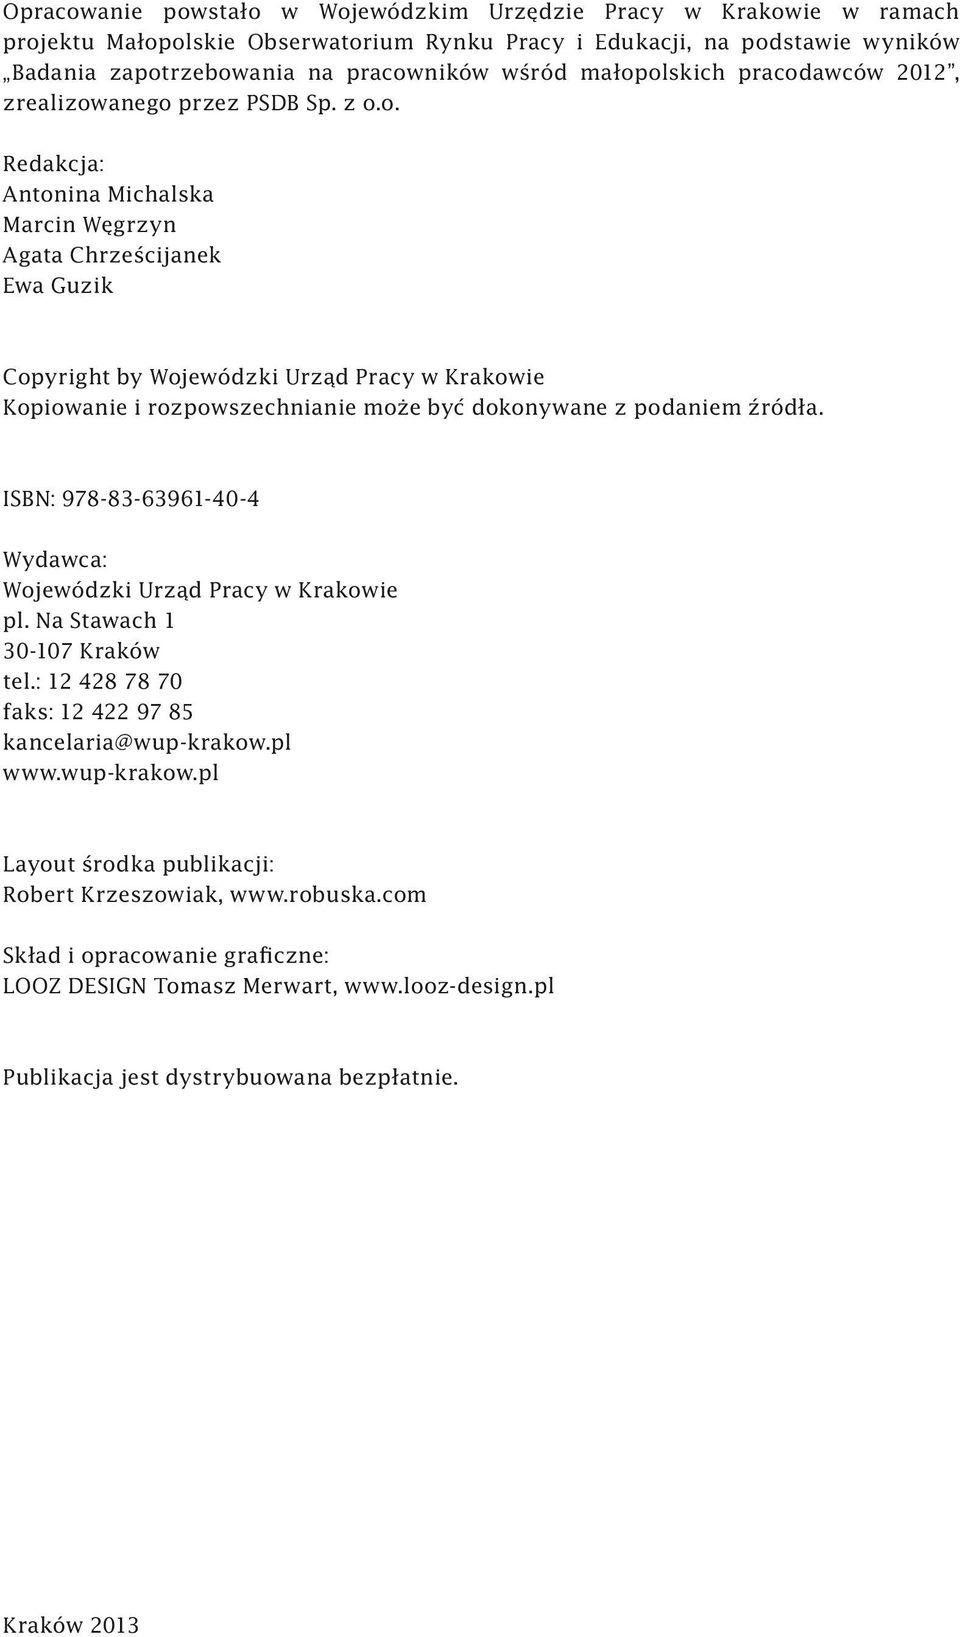 ISBN: 978-83-63961-40-4 Wydawca: Wojewódzki Urząd Pracy w Krakowie pl. Na Stawach 1 30-107 Kraków tel.: 12 428 78 70 faks: 12 422 97 85 kancelaria@wup-krakow.